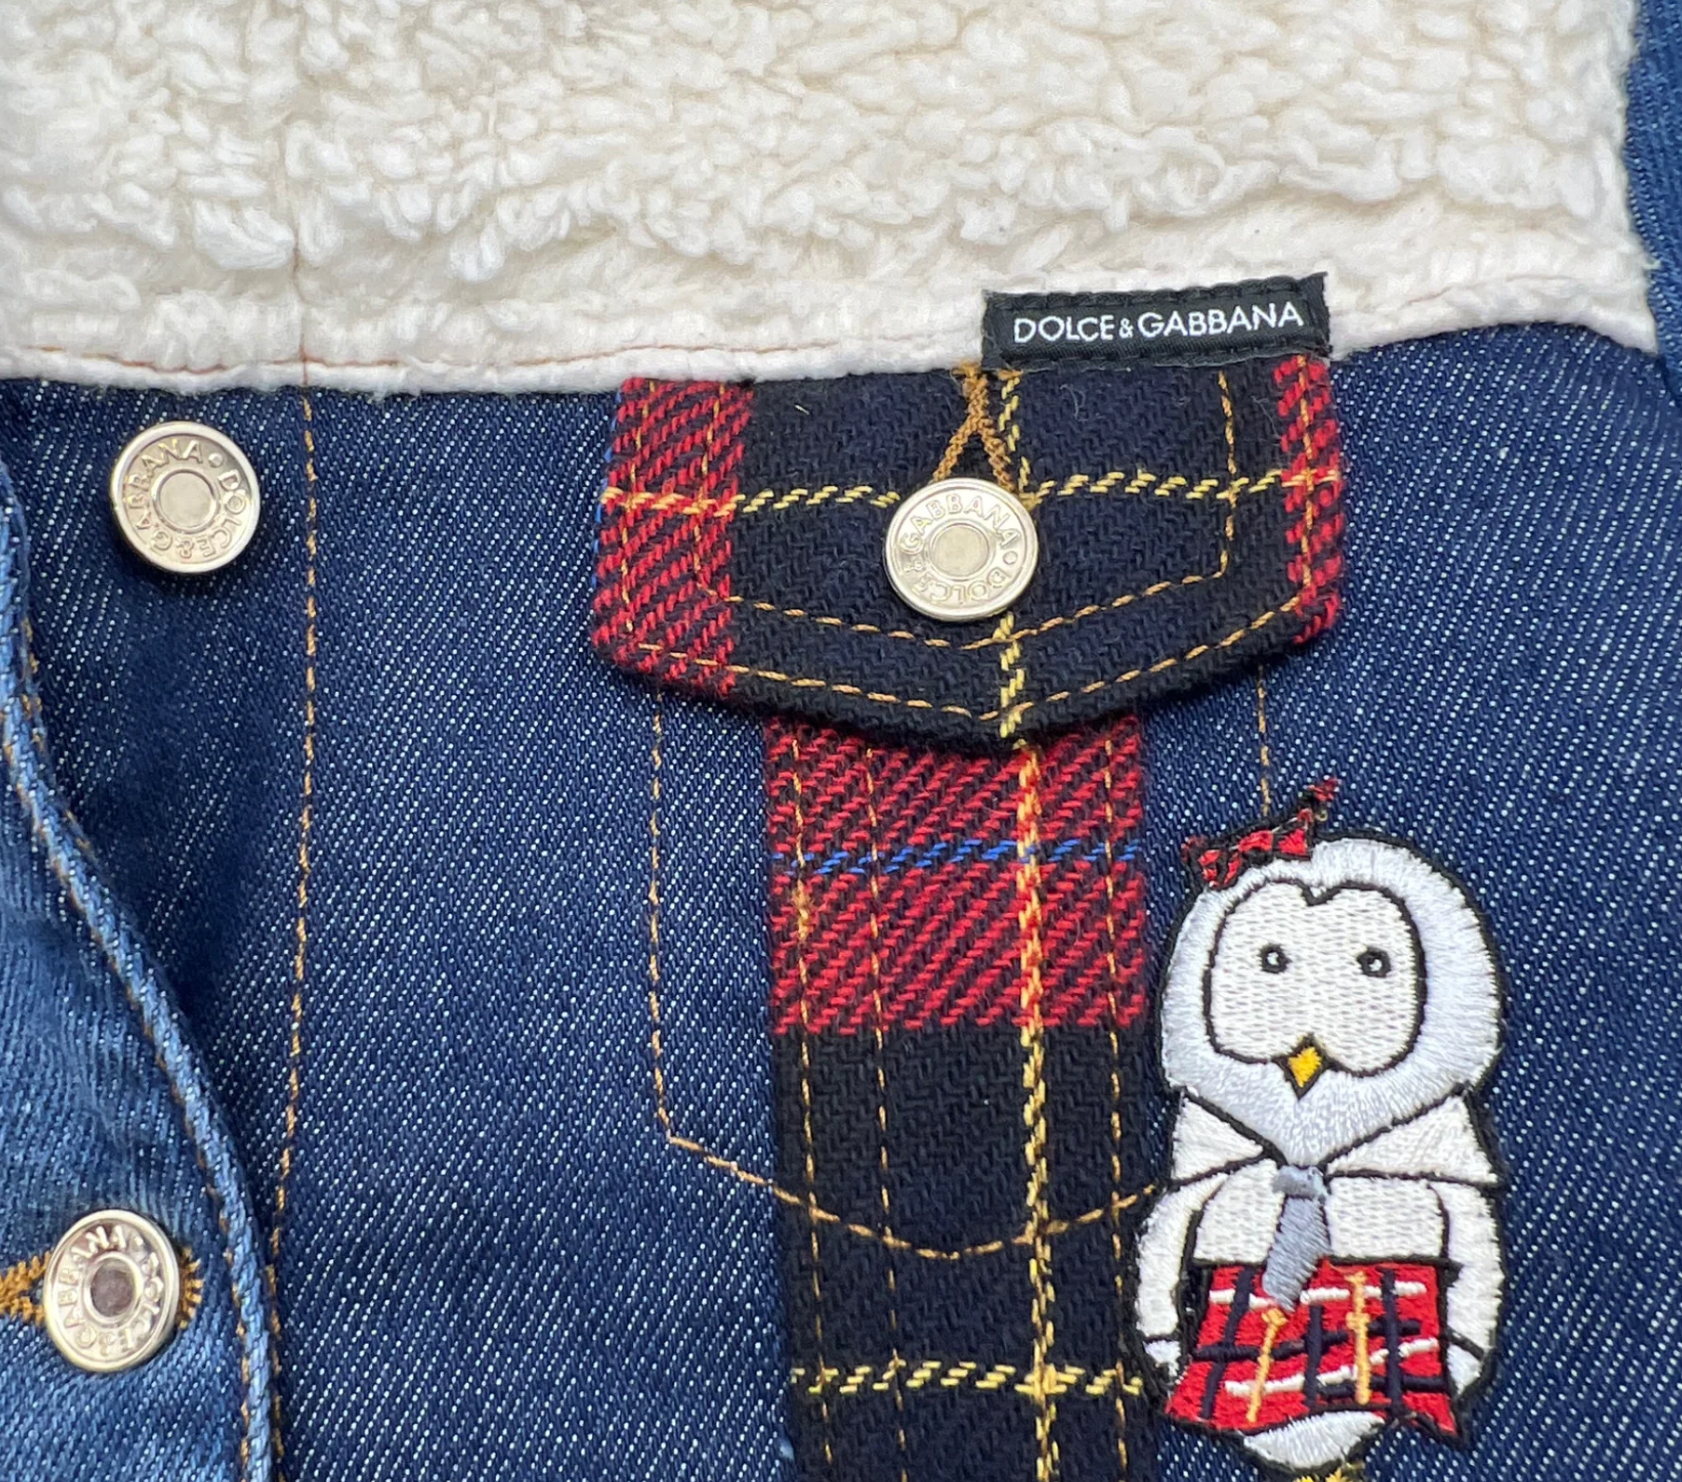 DOLCE & GABBANA - Veste en jean écossaise - 2 ans